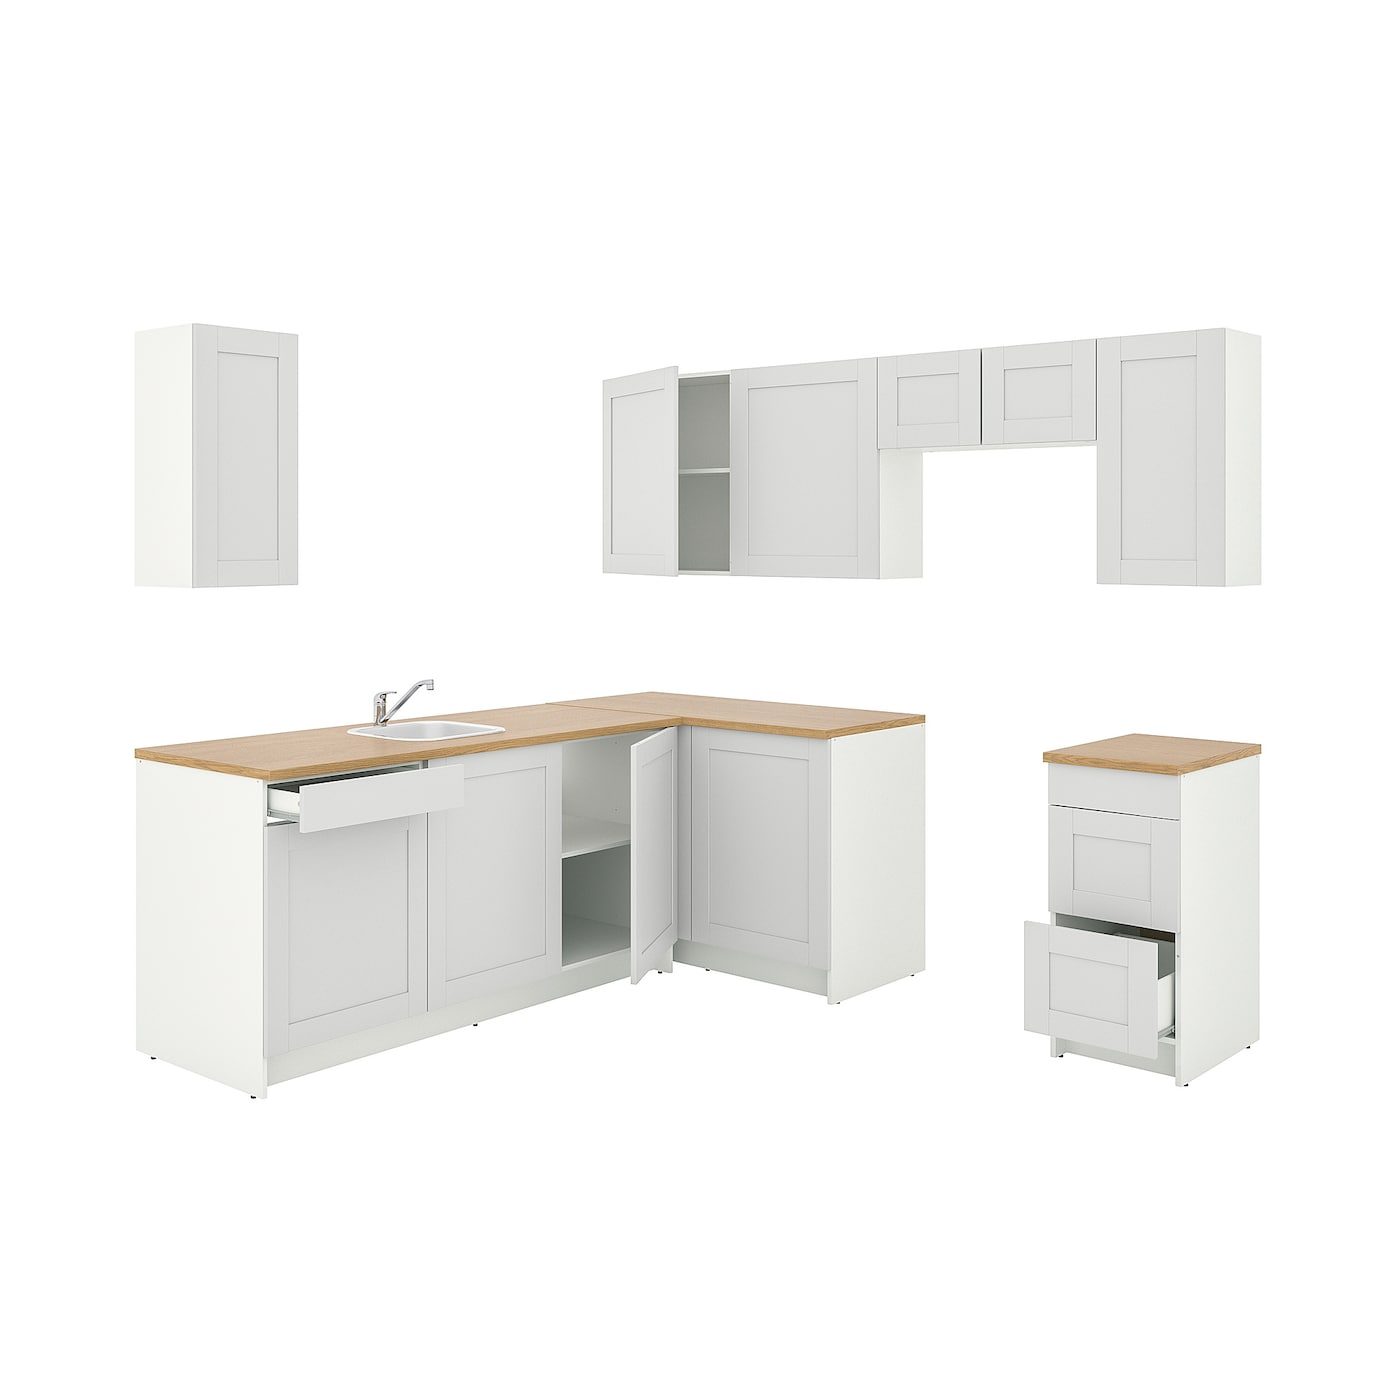 KNOXHULT Corner kitchen, white - IKEA